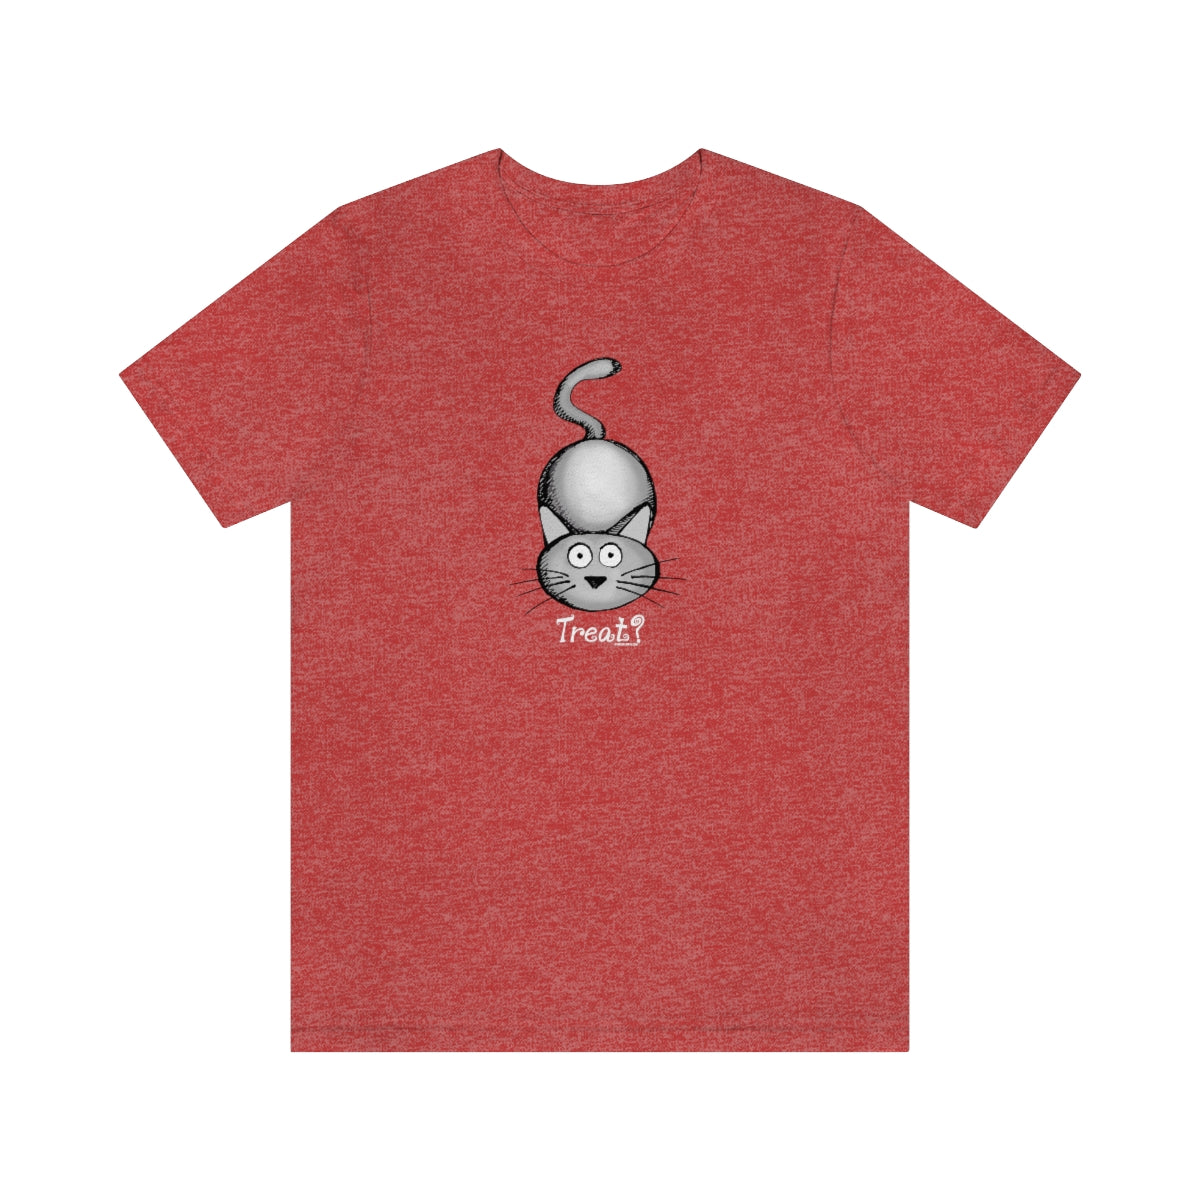 Treat (Cat) Unisex Soft Cotton T-Shirt